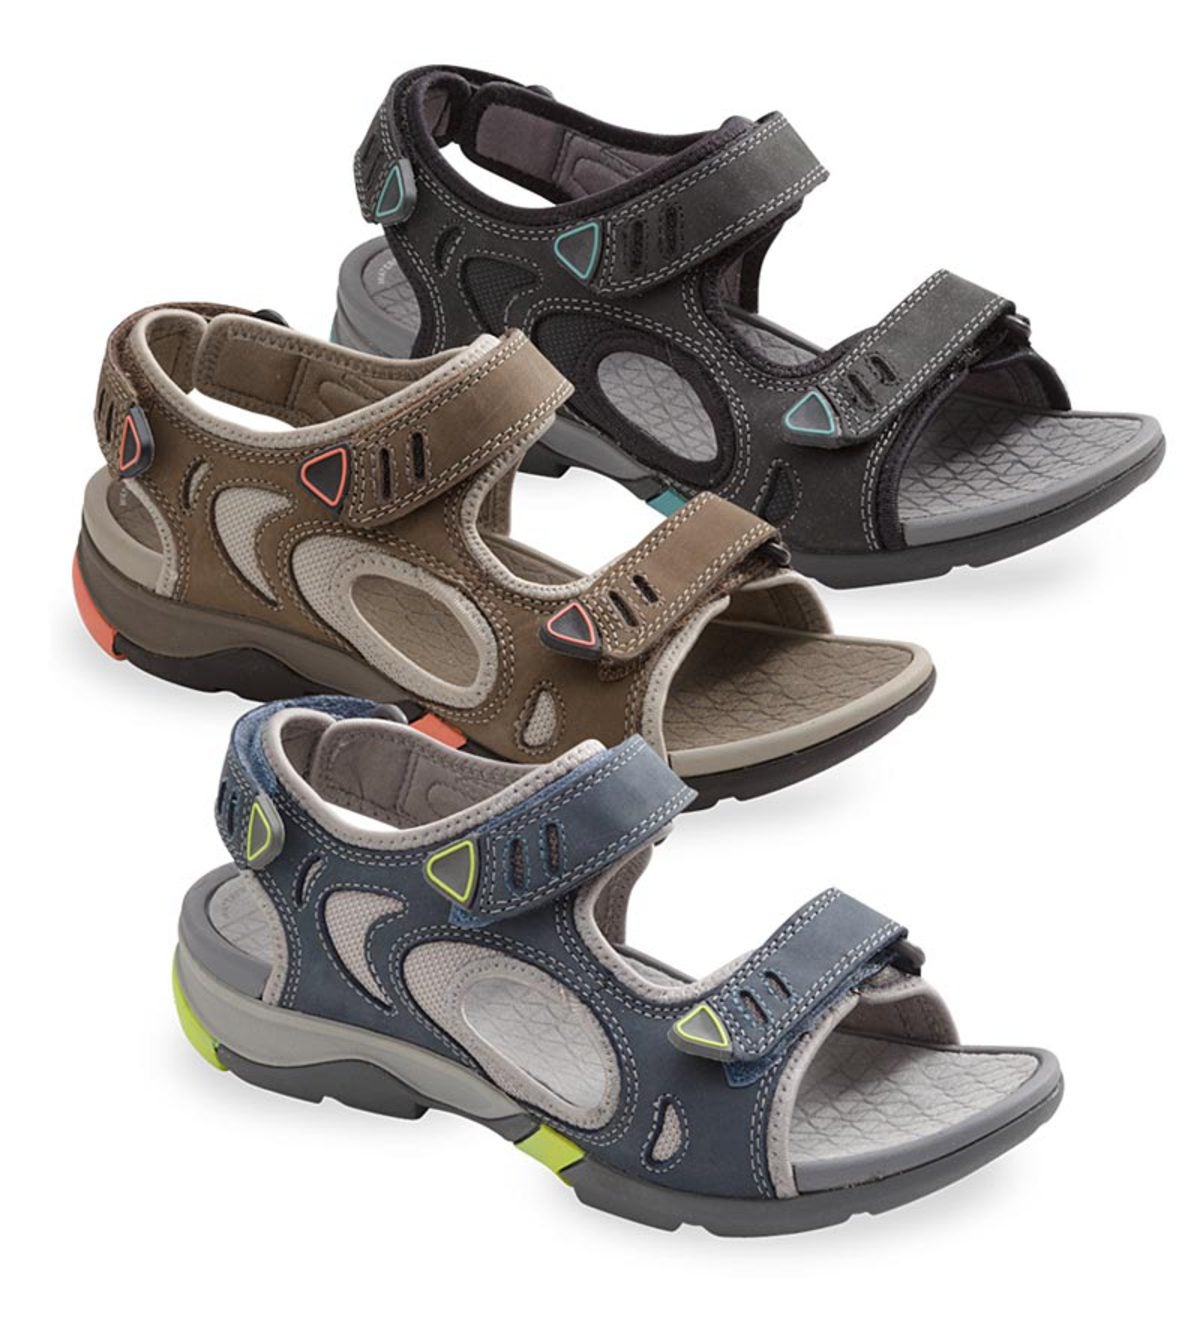 Clarks Wave Walk Womens Size 9 N Beige Tan Nubuck Leather Oxford Walking  Shoes | eBay